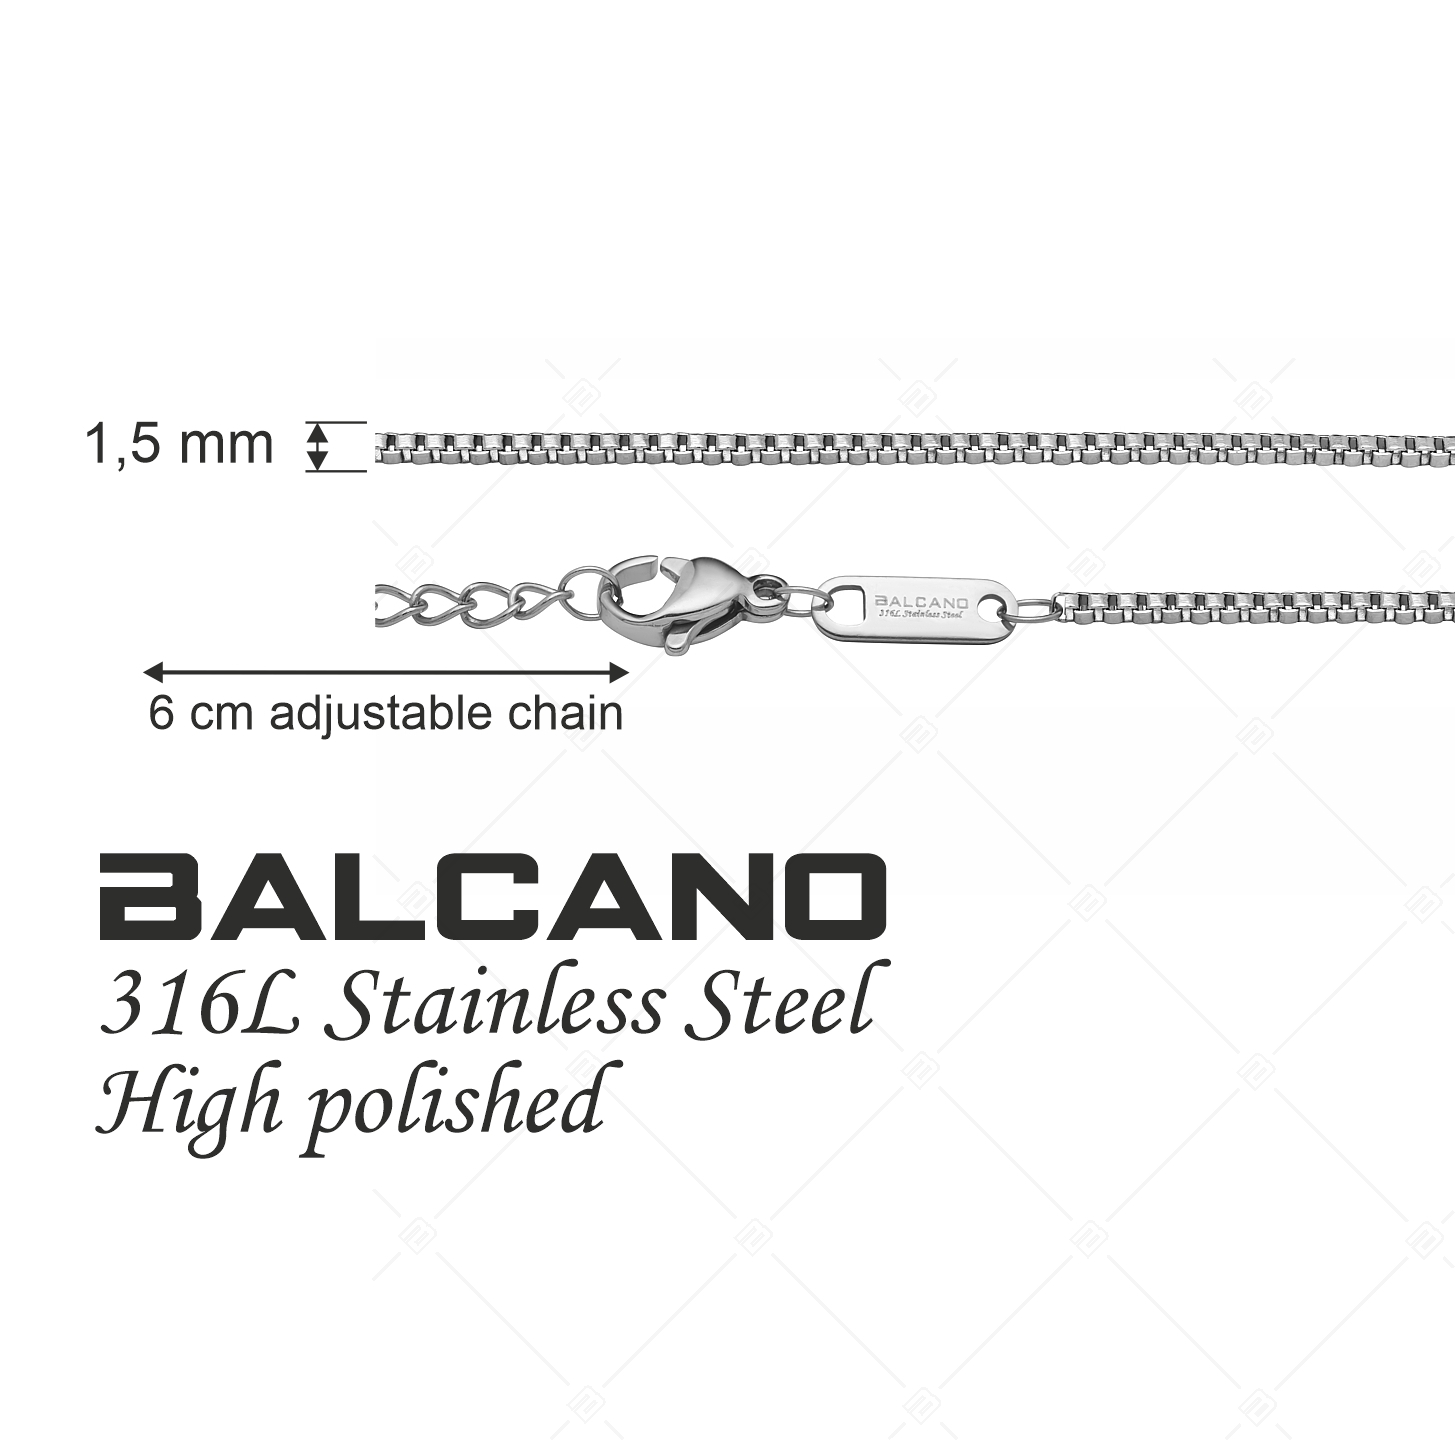 BALCANO - Venetian / Stainless Steel Venetian Chain-Anklet, High Polished - 1,5 mm (751292BC97)